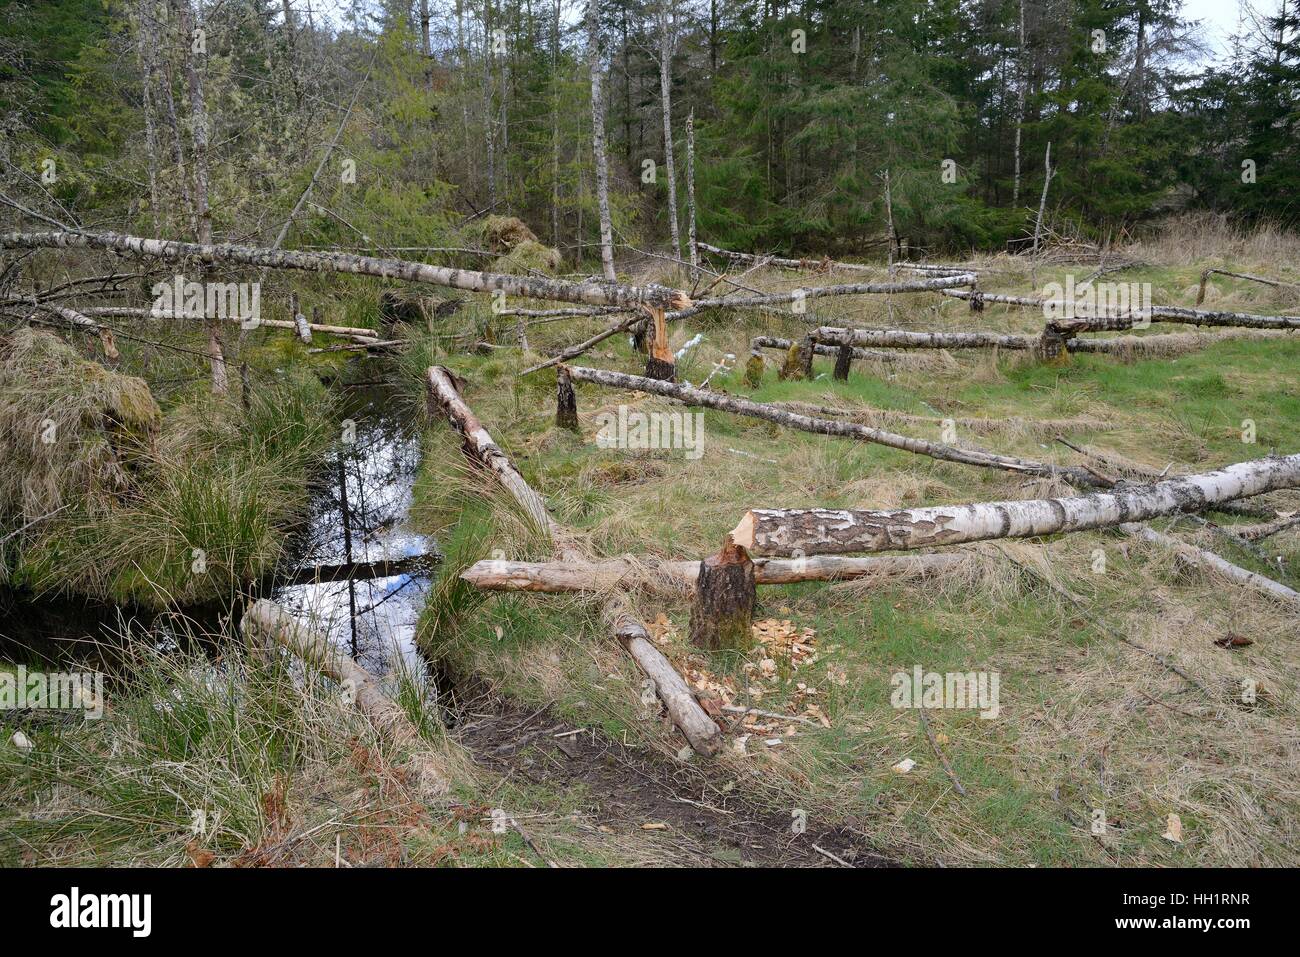 Plusieurs jeunes bouleaux (Betula sp.) abattu par le castor d'Eurasie (Castor fiber), Tayside, Ecosse, Royaume-Uni Banque D'Images